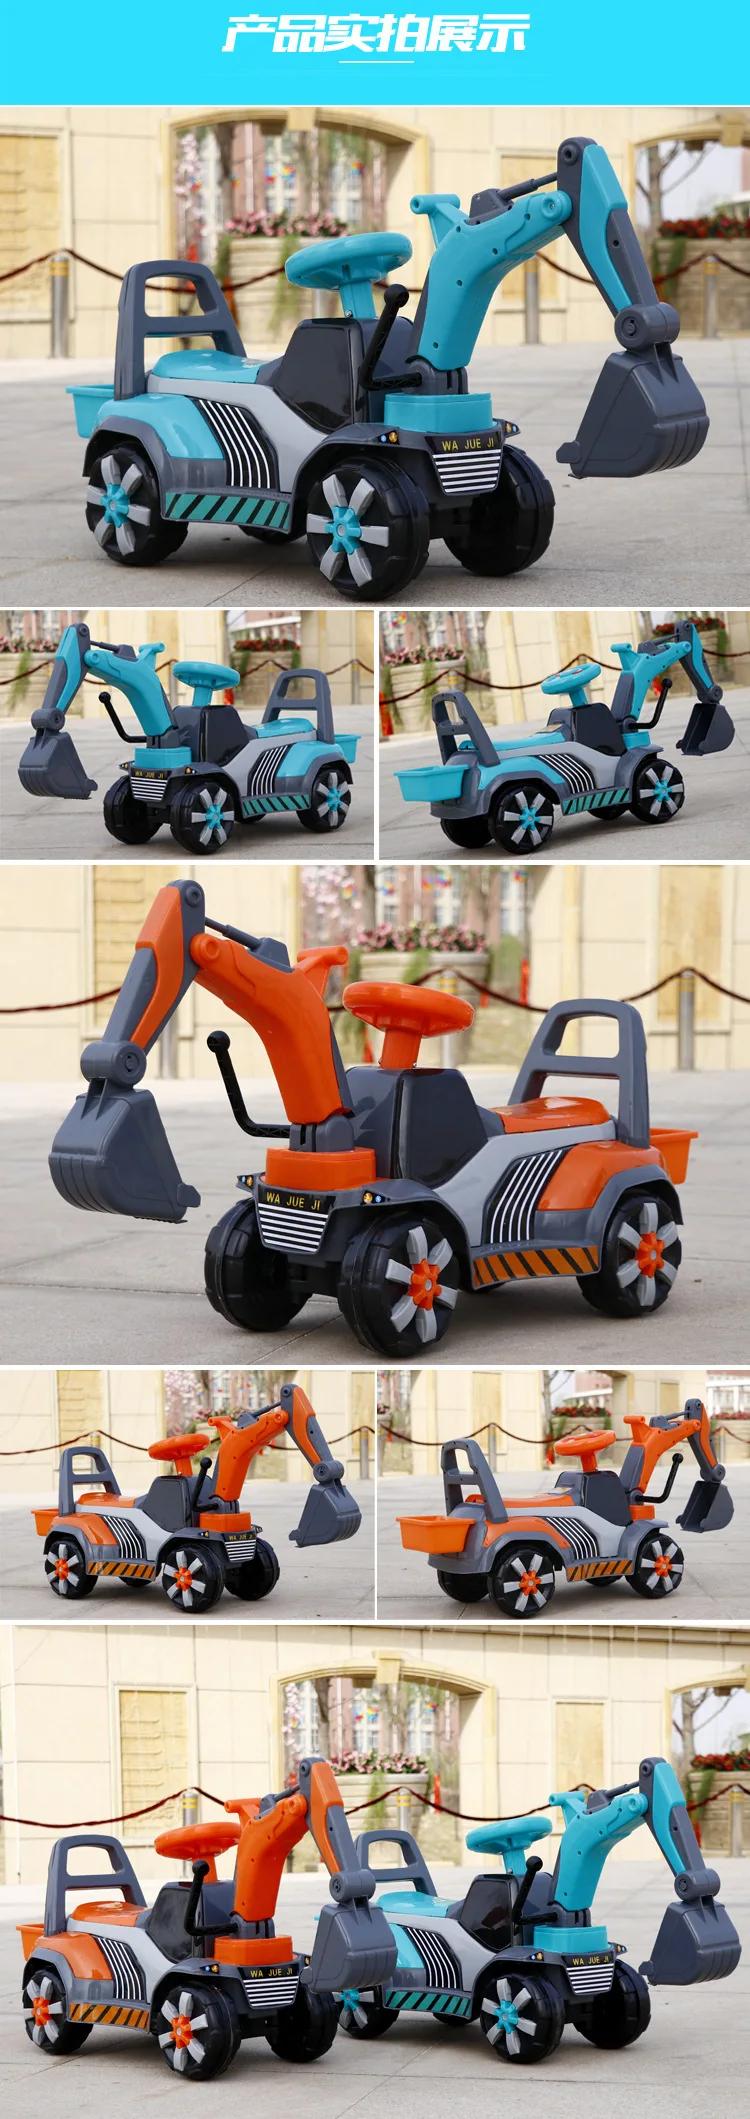 Детский игрушечный землекоп, большой Музыкальный Электрический экскаватор с четырьмя колесами, детский спортивный автомобиль